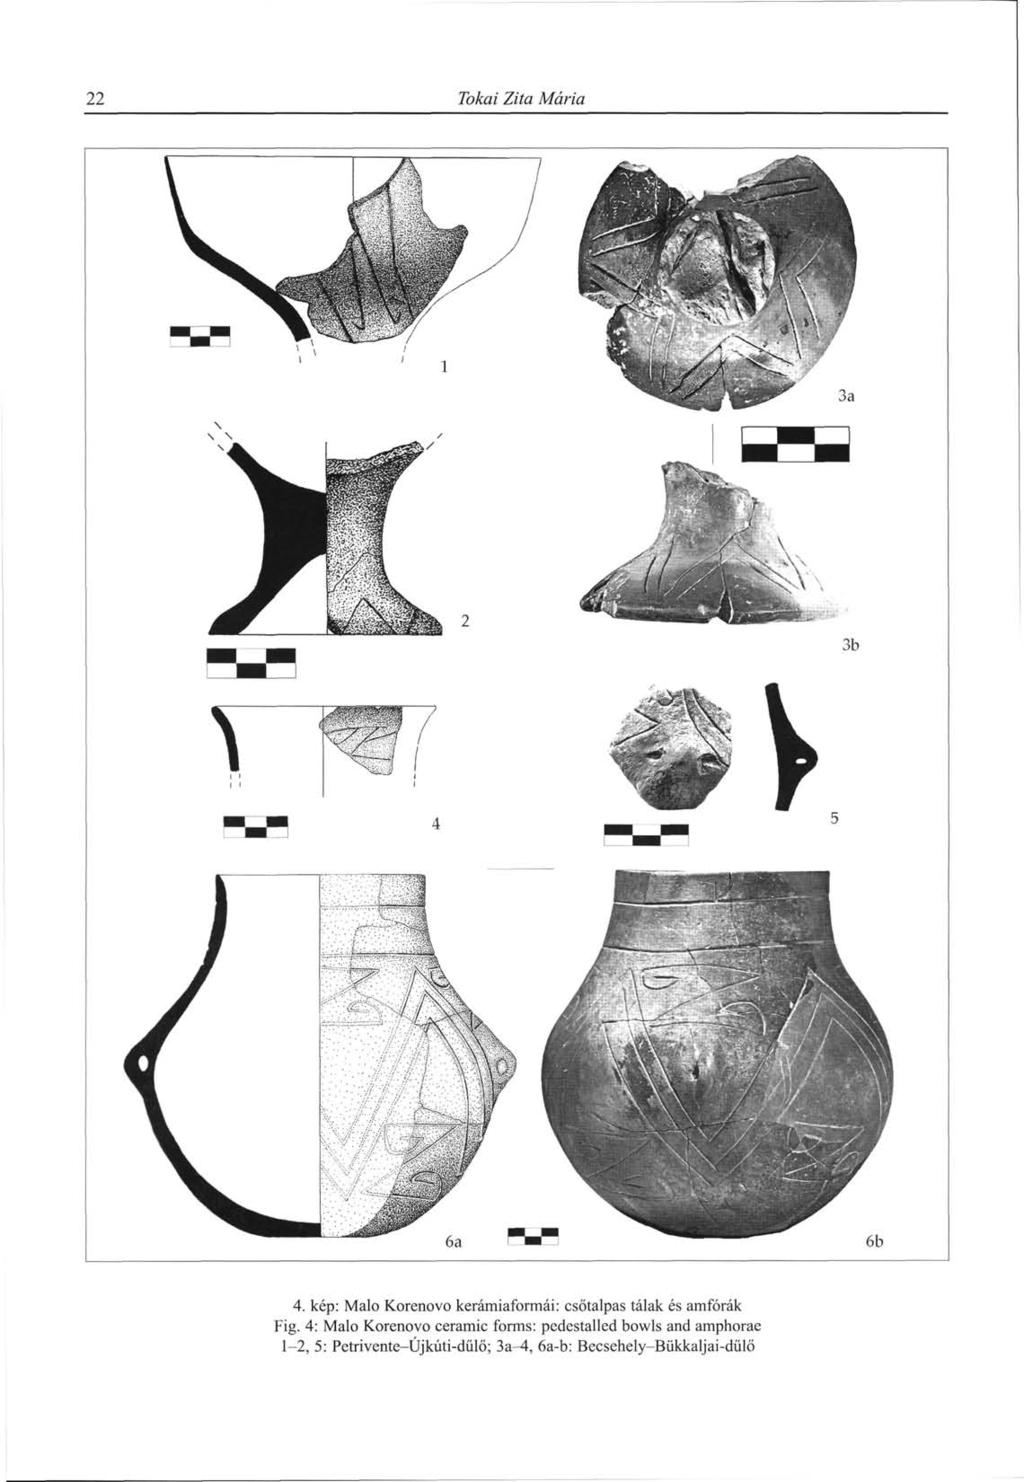 22 Tokai Zita Mária 4. kép: Malo Korenovo kerámiaformái: csőtalpas tálak és amforák Fig.